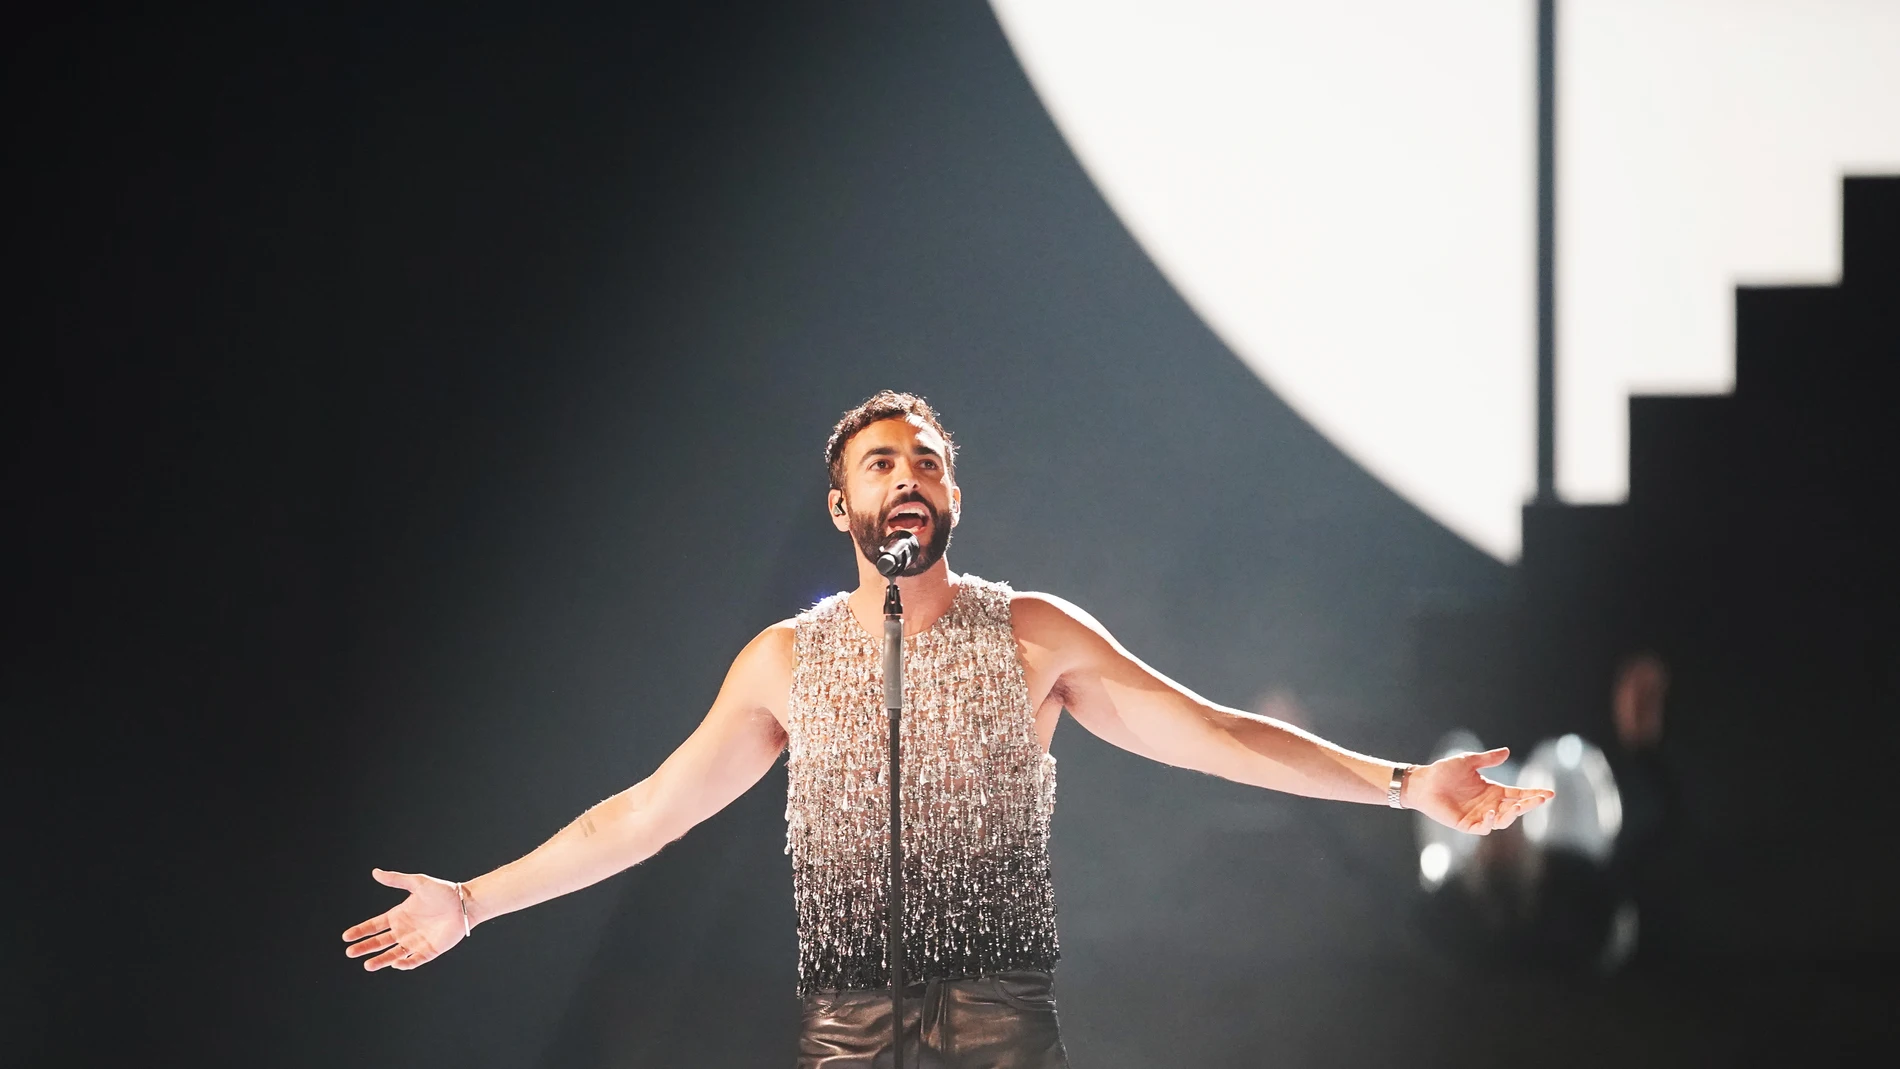 Marco Mengoni interpreta 'Due Vite' para representar a Italia en la Gran Final de Eurovisión 2023, el 13 de mayo en Liverpool.